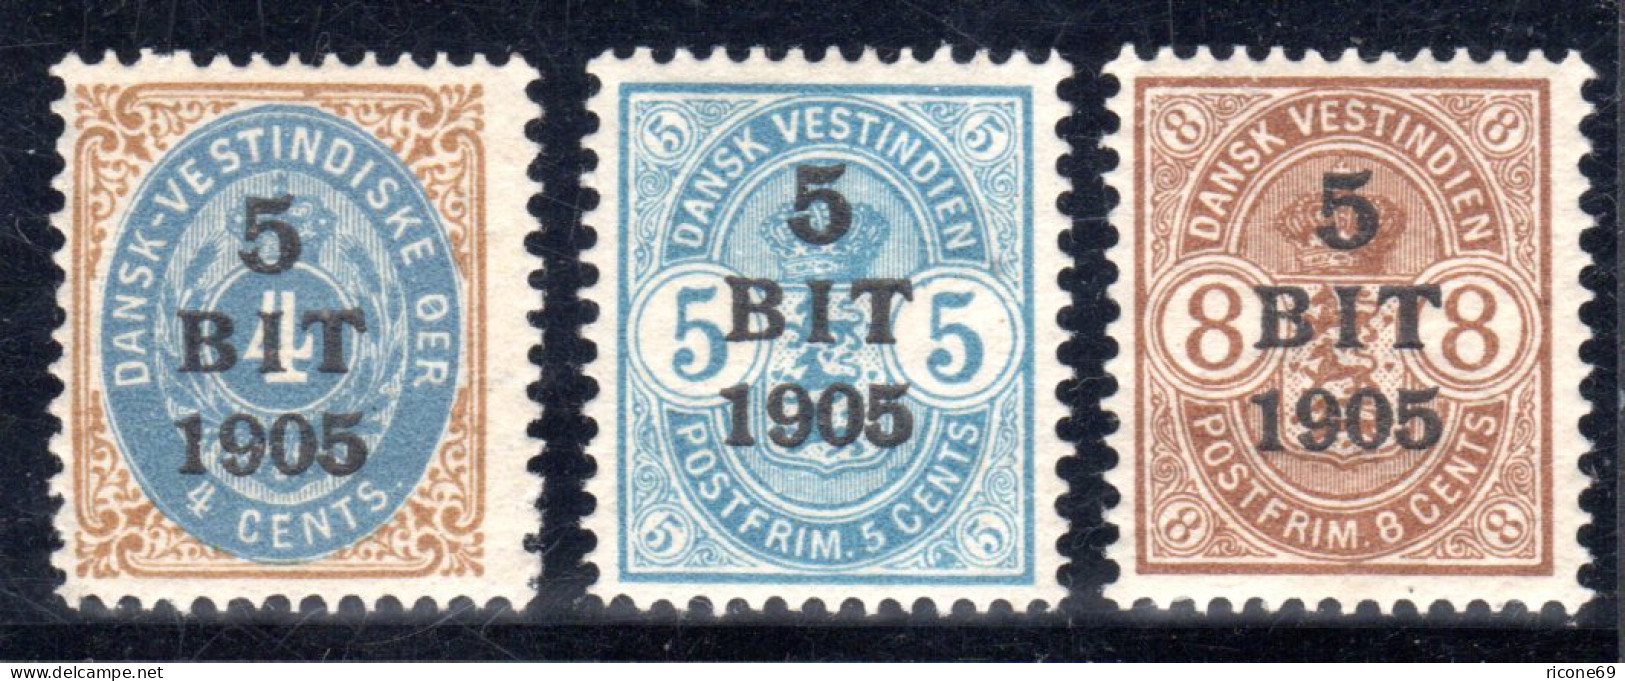 Dänisch Westindien, DWI, Kpl. Postfrische Ausgabe V. 3 Überdruckwerten 1905.  - Antille